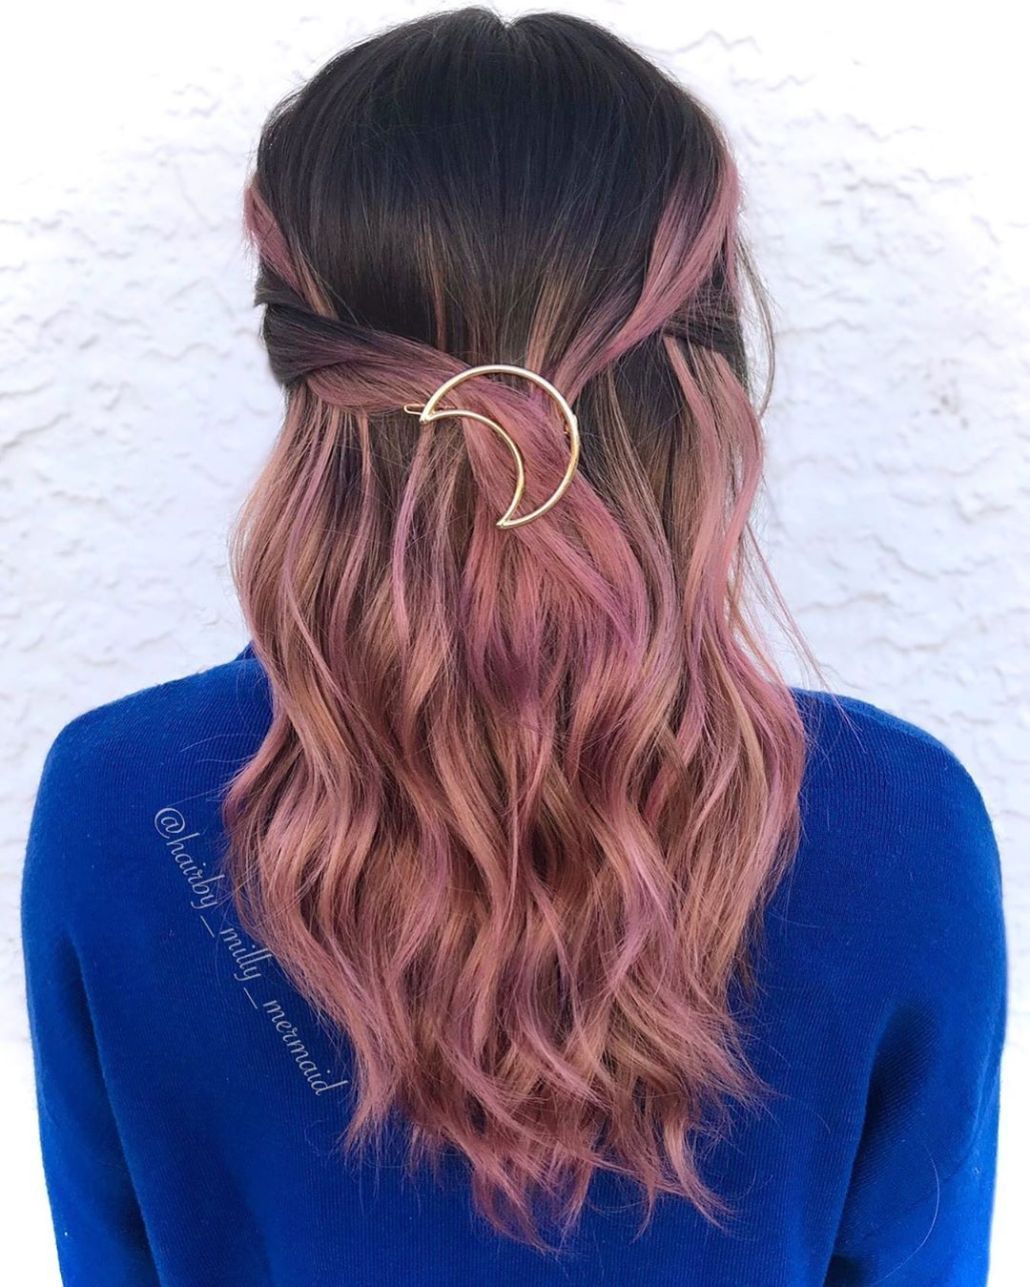 19 hair Rose Gold pixie ideas